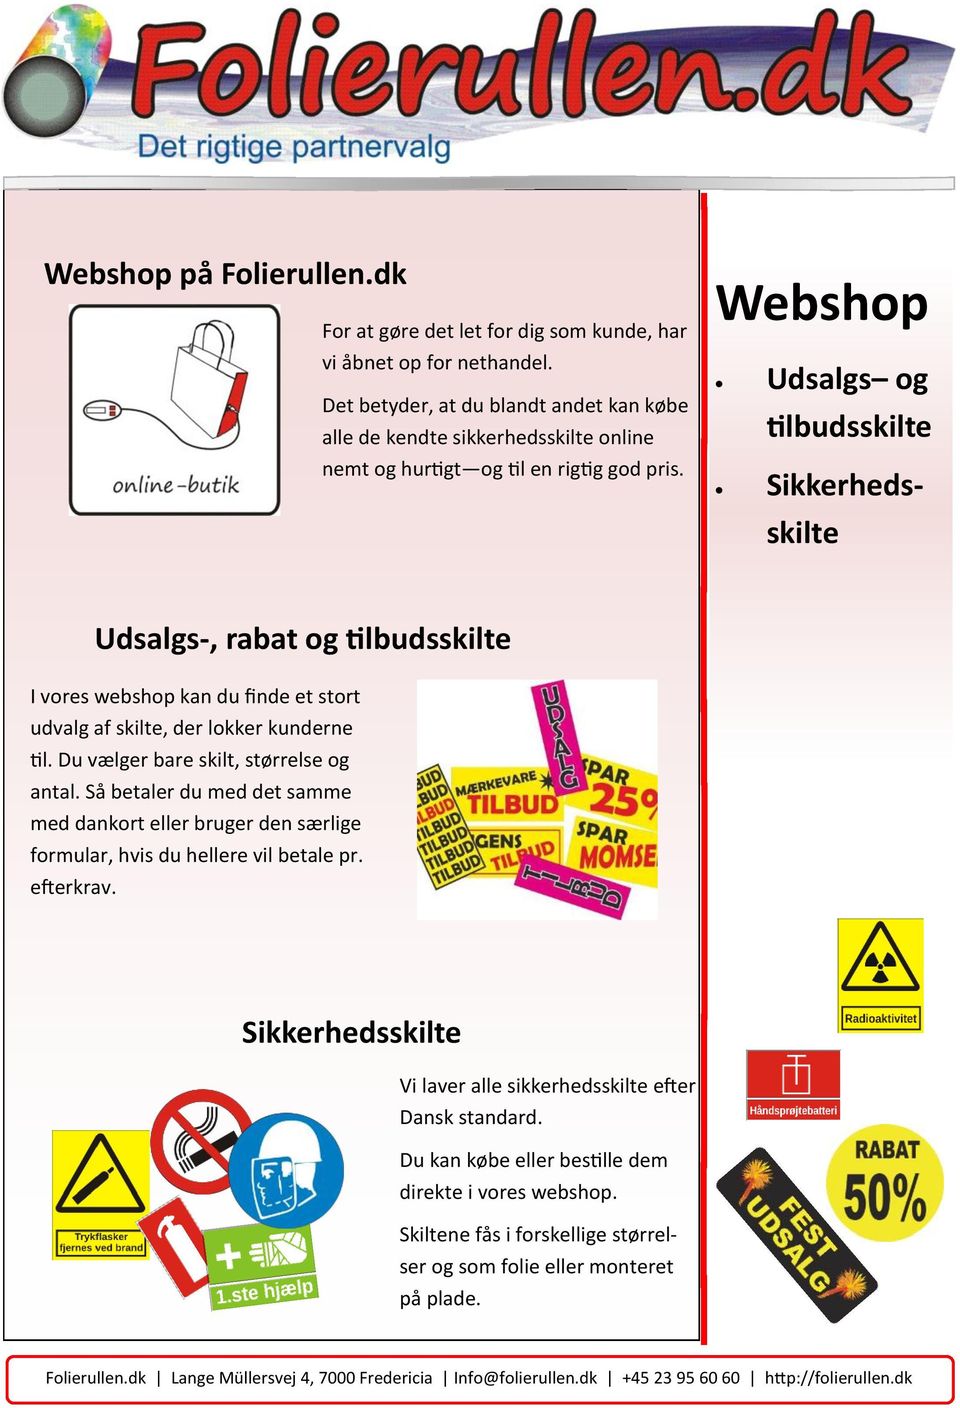 Webshop Udsalgs og tilbudsskilte Sikkerhedsskilte Udsalgs-, rabat og tilbudsskilte I vores webshop kan du finde et stort udvalg af skilte, der lokker kunderne til.